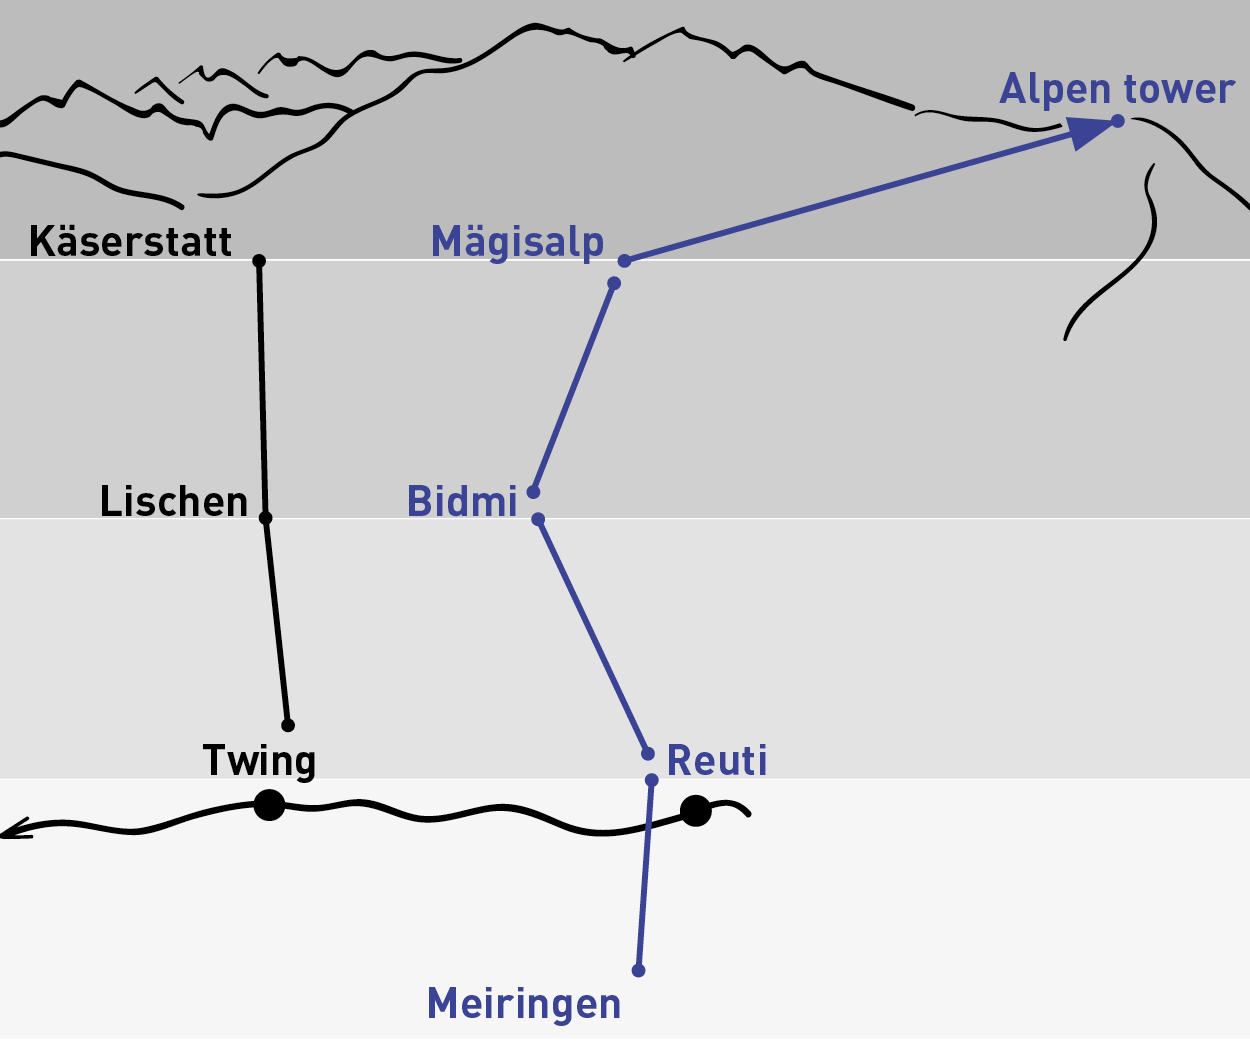 Meiringen – Alpen tower | Einfache Fahrt